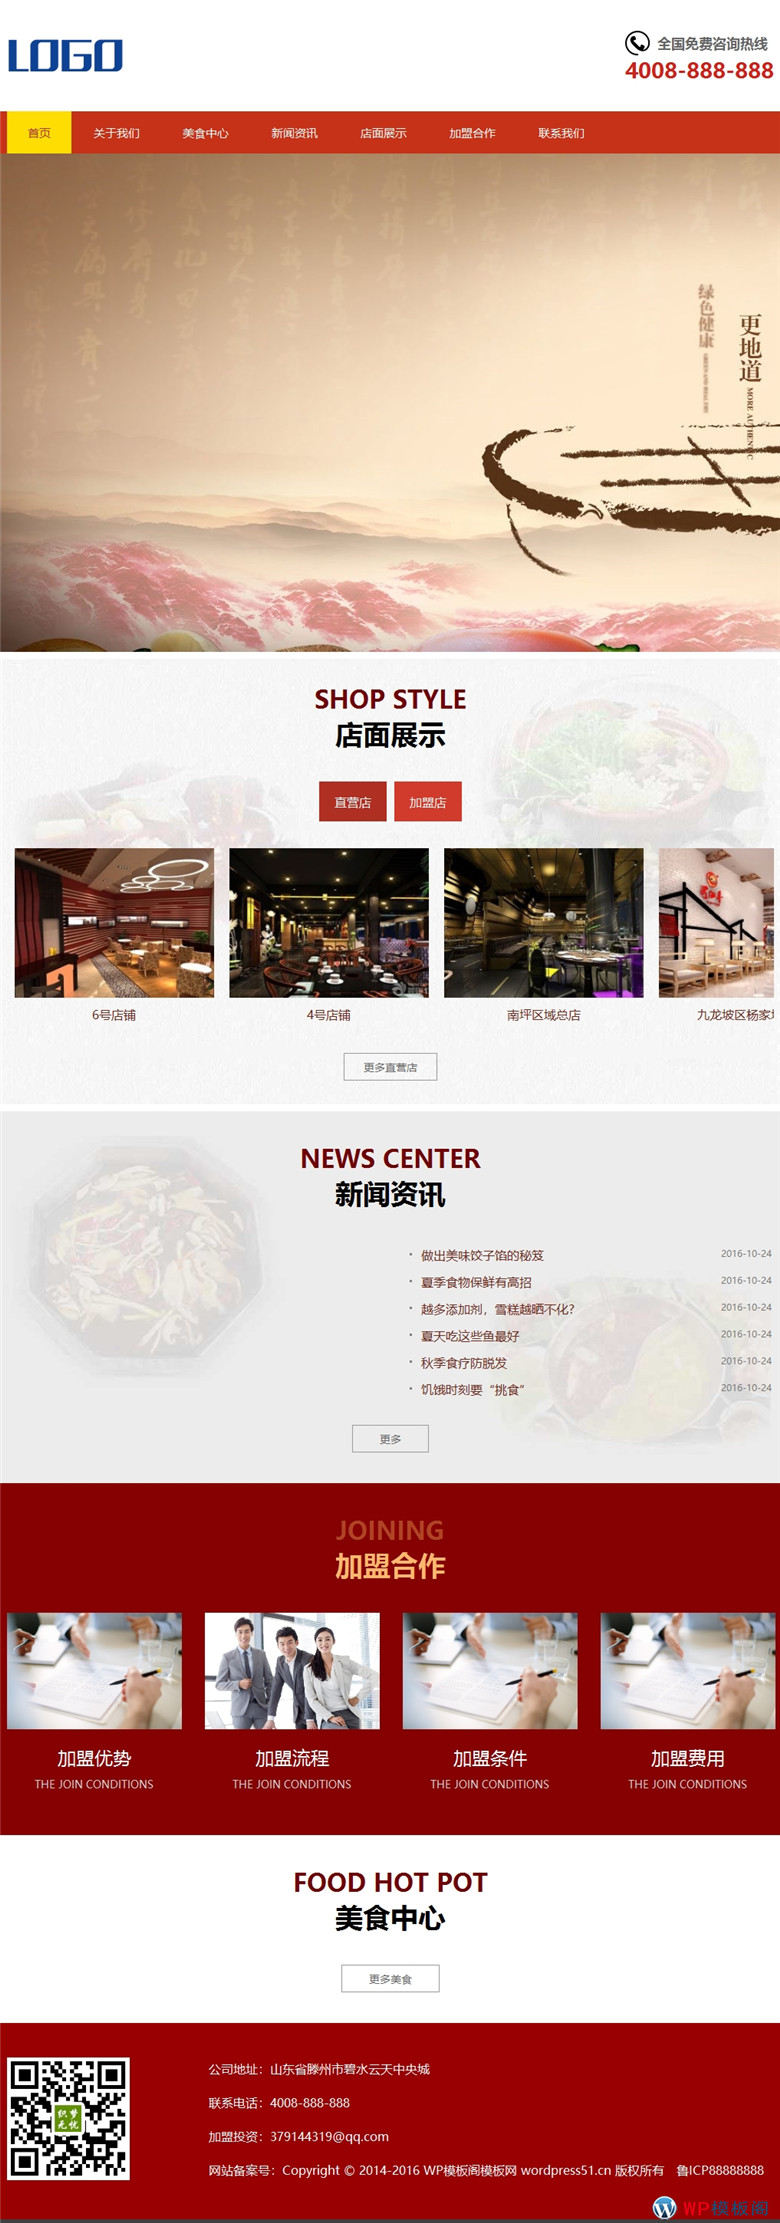 鸳鸯火锅html5响应式特色美食店加盟类Wordpress模板演示图